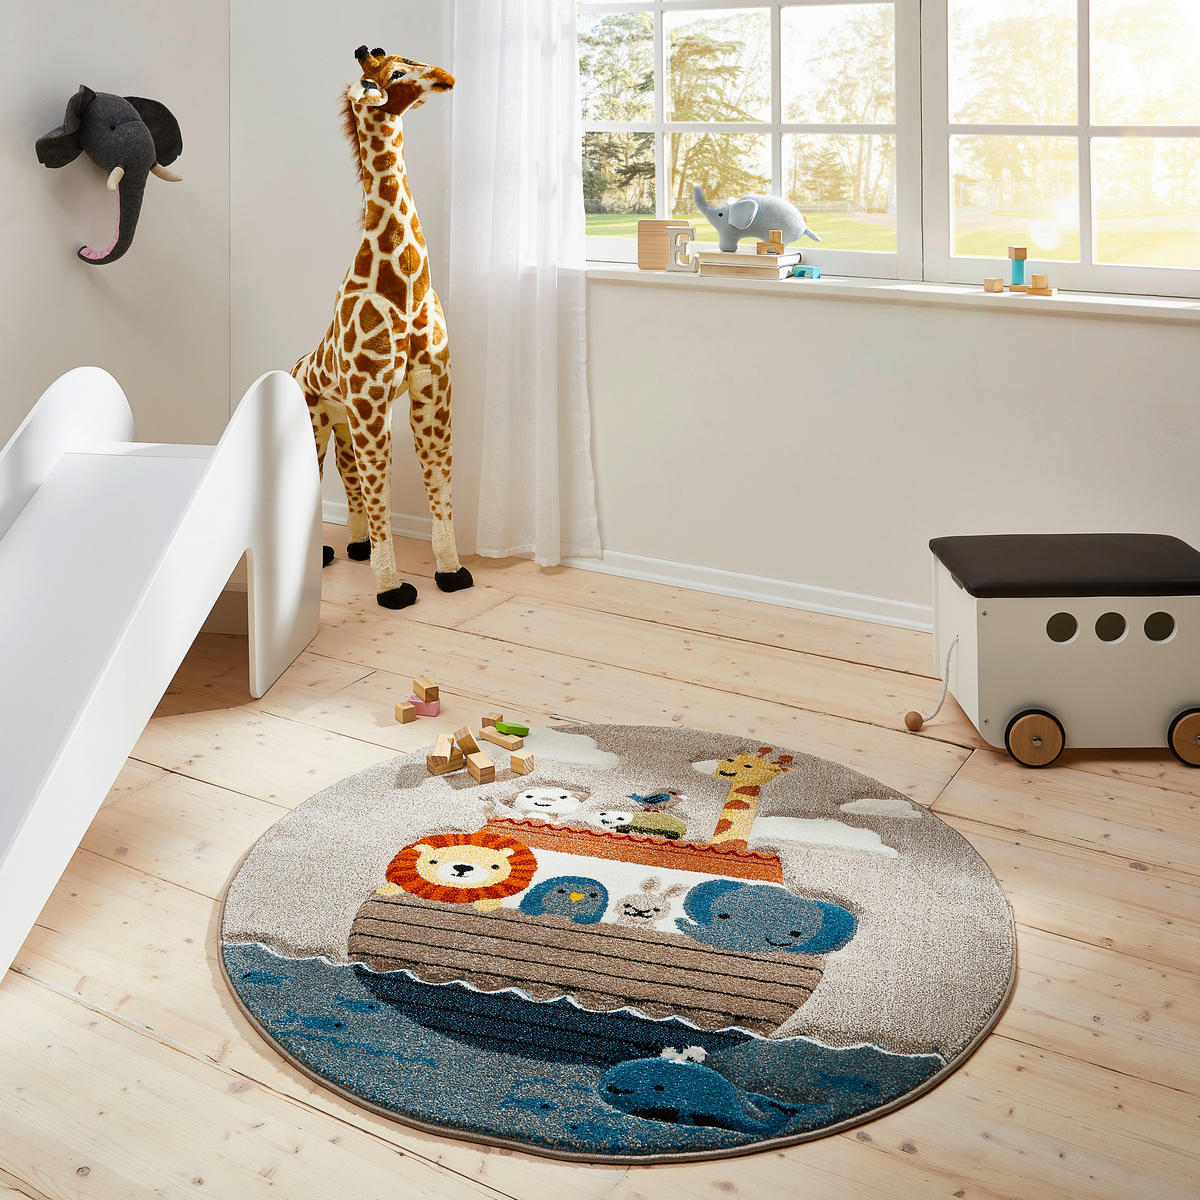 Kinder-Teppich rund 120 cm Tier-Motiv kaufen